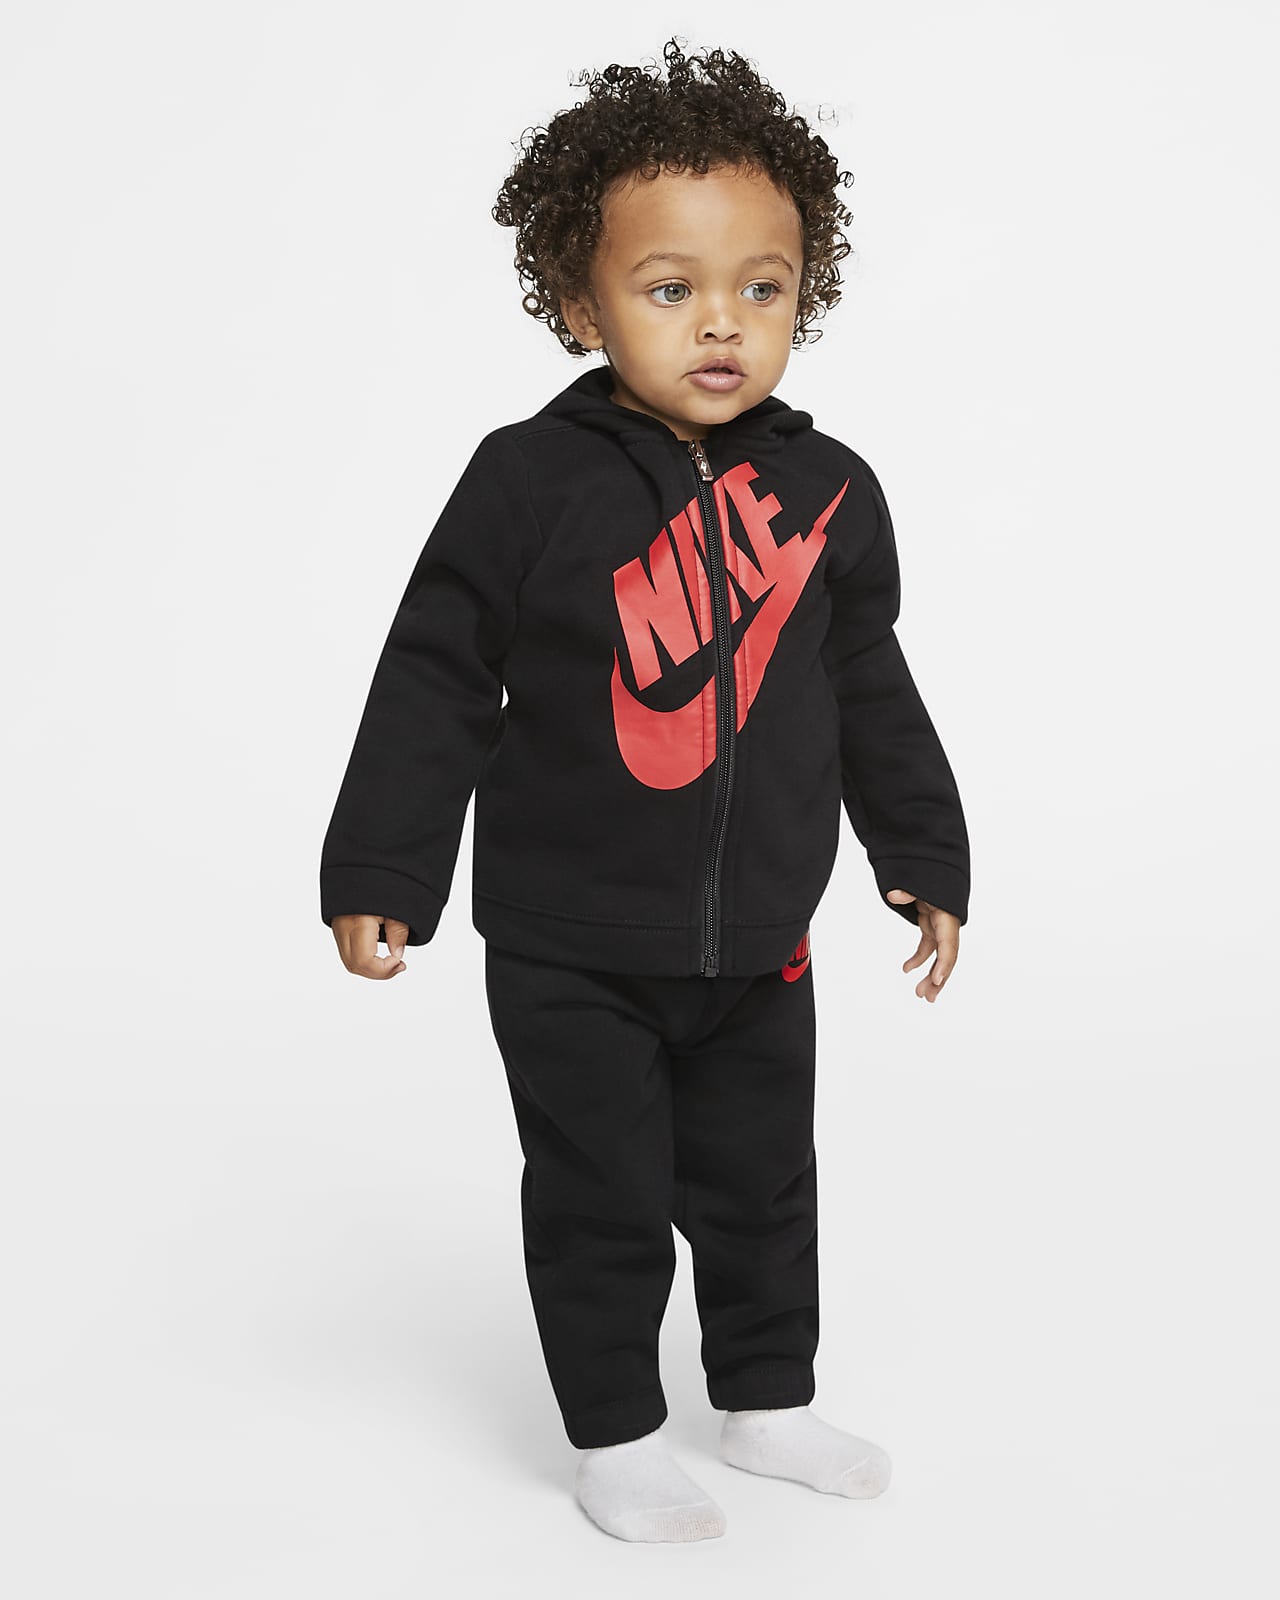 Absoluto Remolque Pinchazo Conjunto de sudadera con capucha y pantalones para bebé (de 12 a 24 meses)  Nike Sportswear. Nike.com